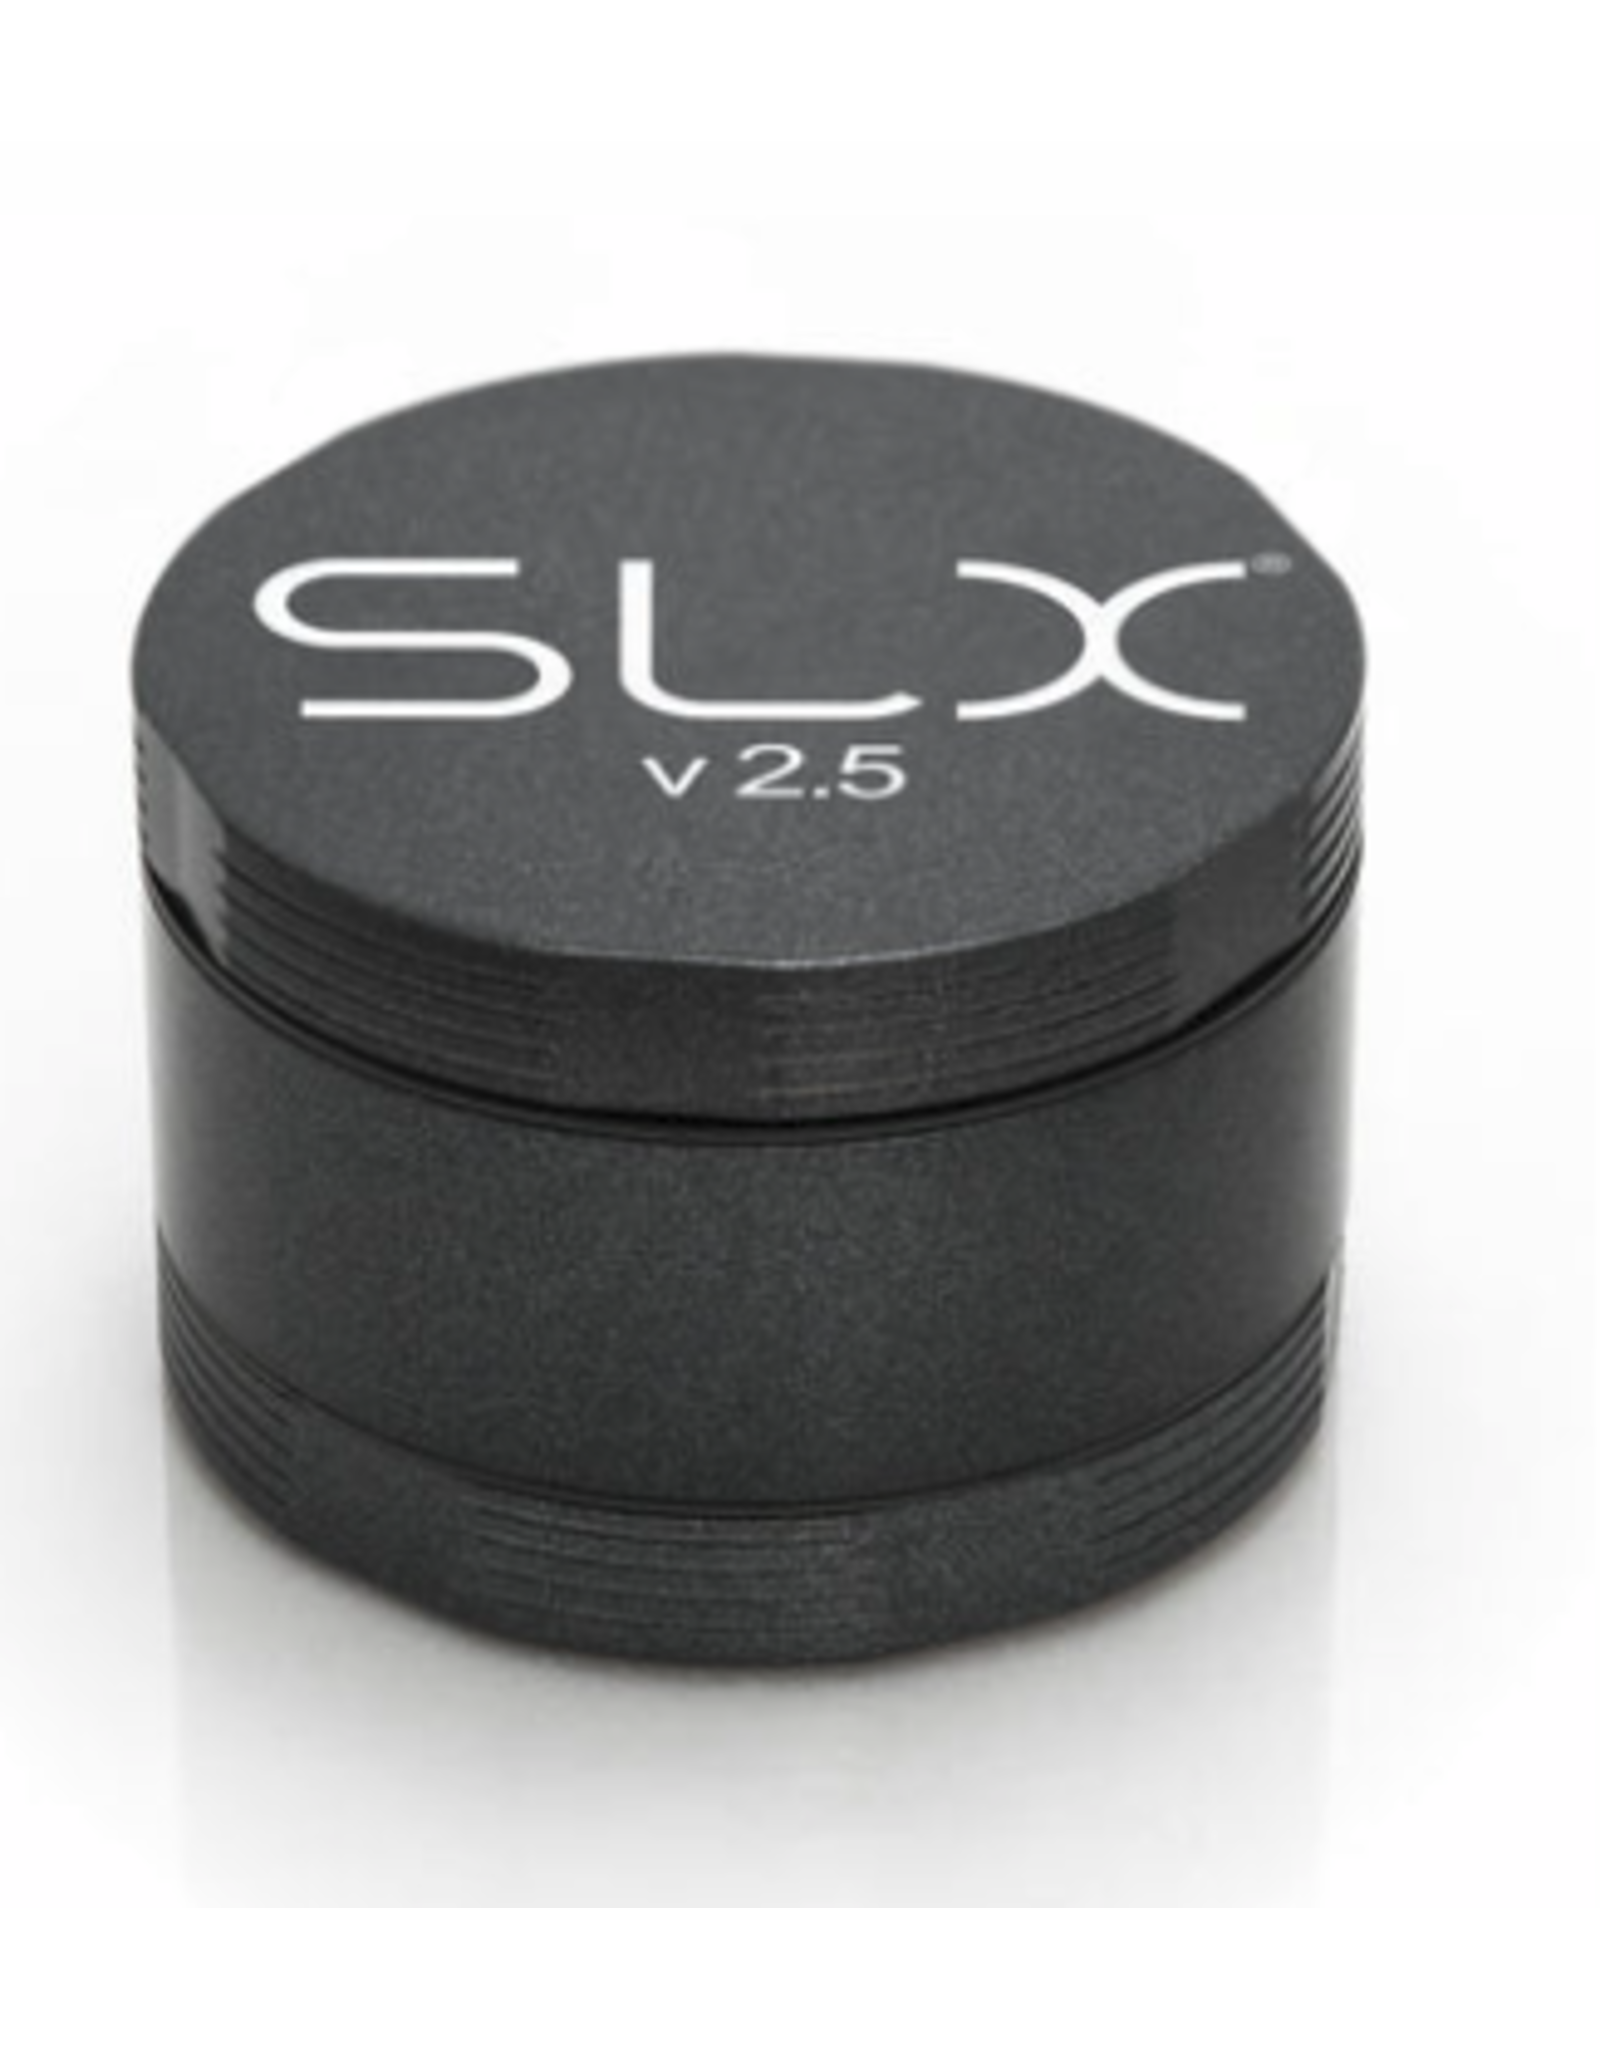 SLX SLX Grinder 50 mm Charcoal